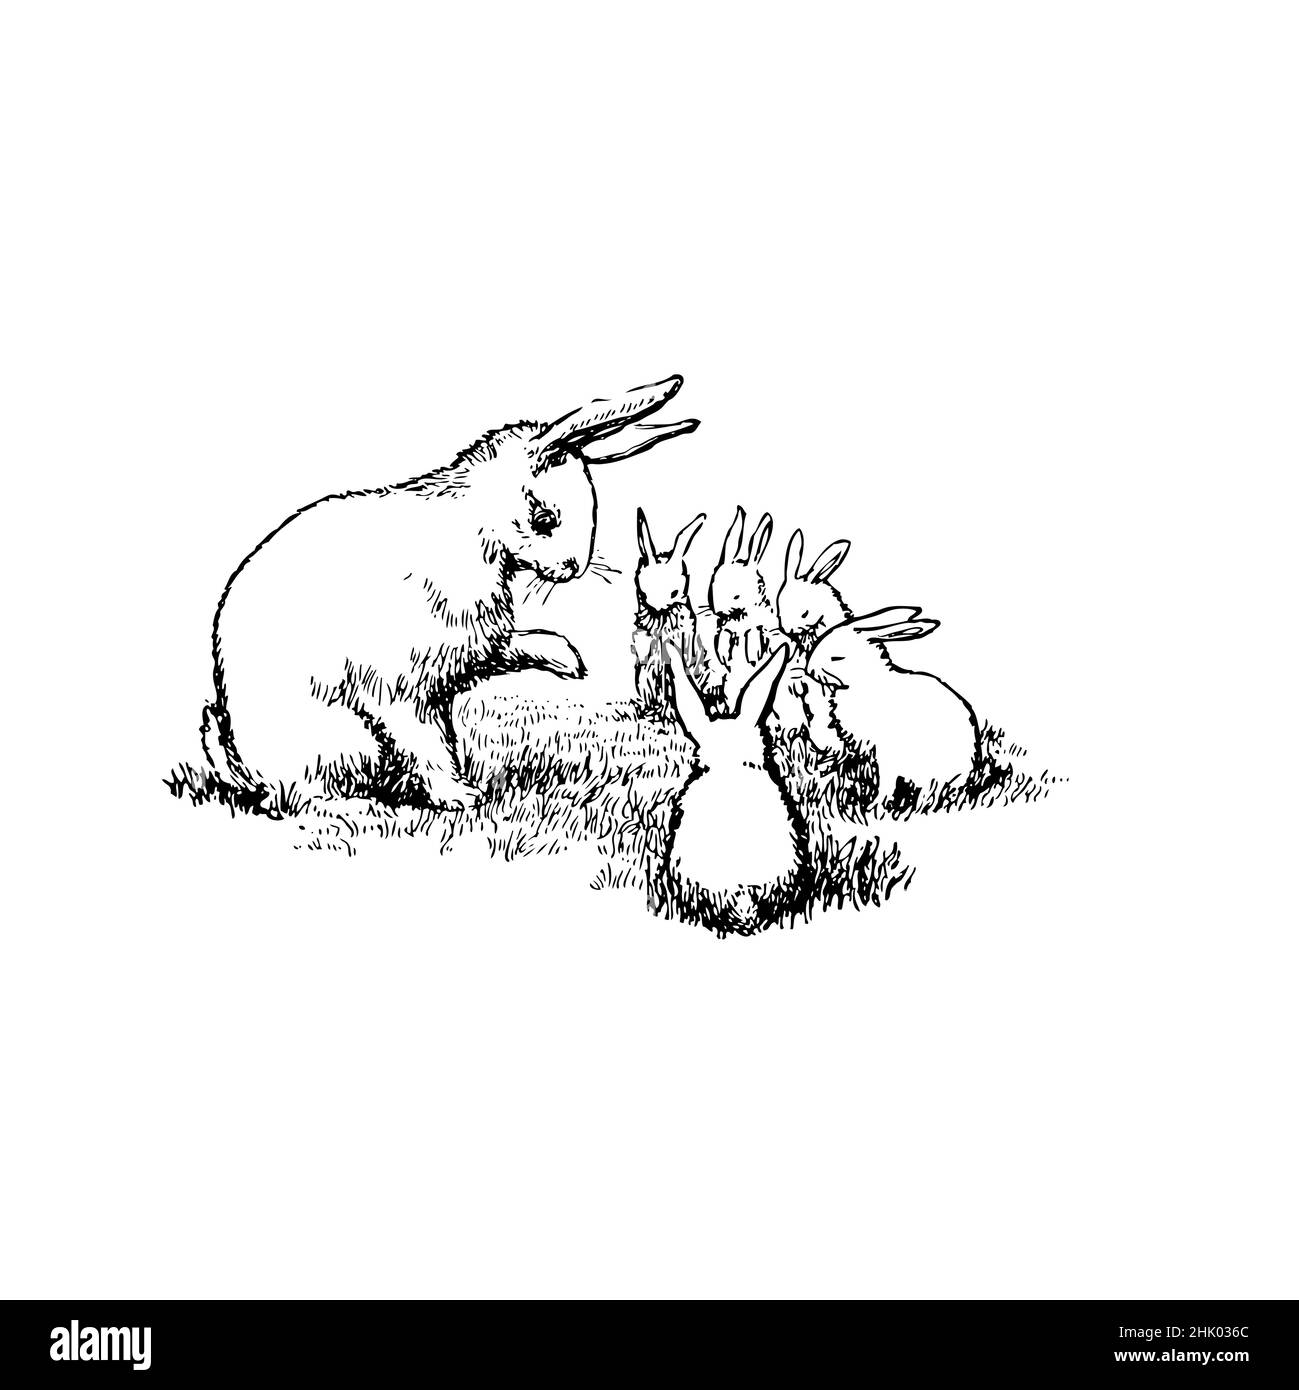 Schwarz-Weiß-Illustration, Hase Hase mit fünf kleinen Hasen. Mutter schaut sich die 5 kleinen Hasen an und lehrt sie vielleicht. Stock Vektor